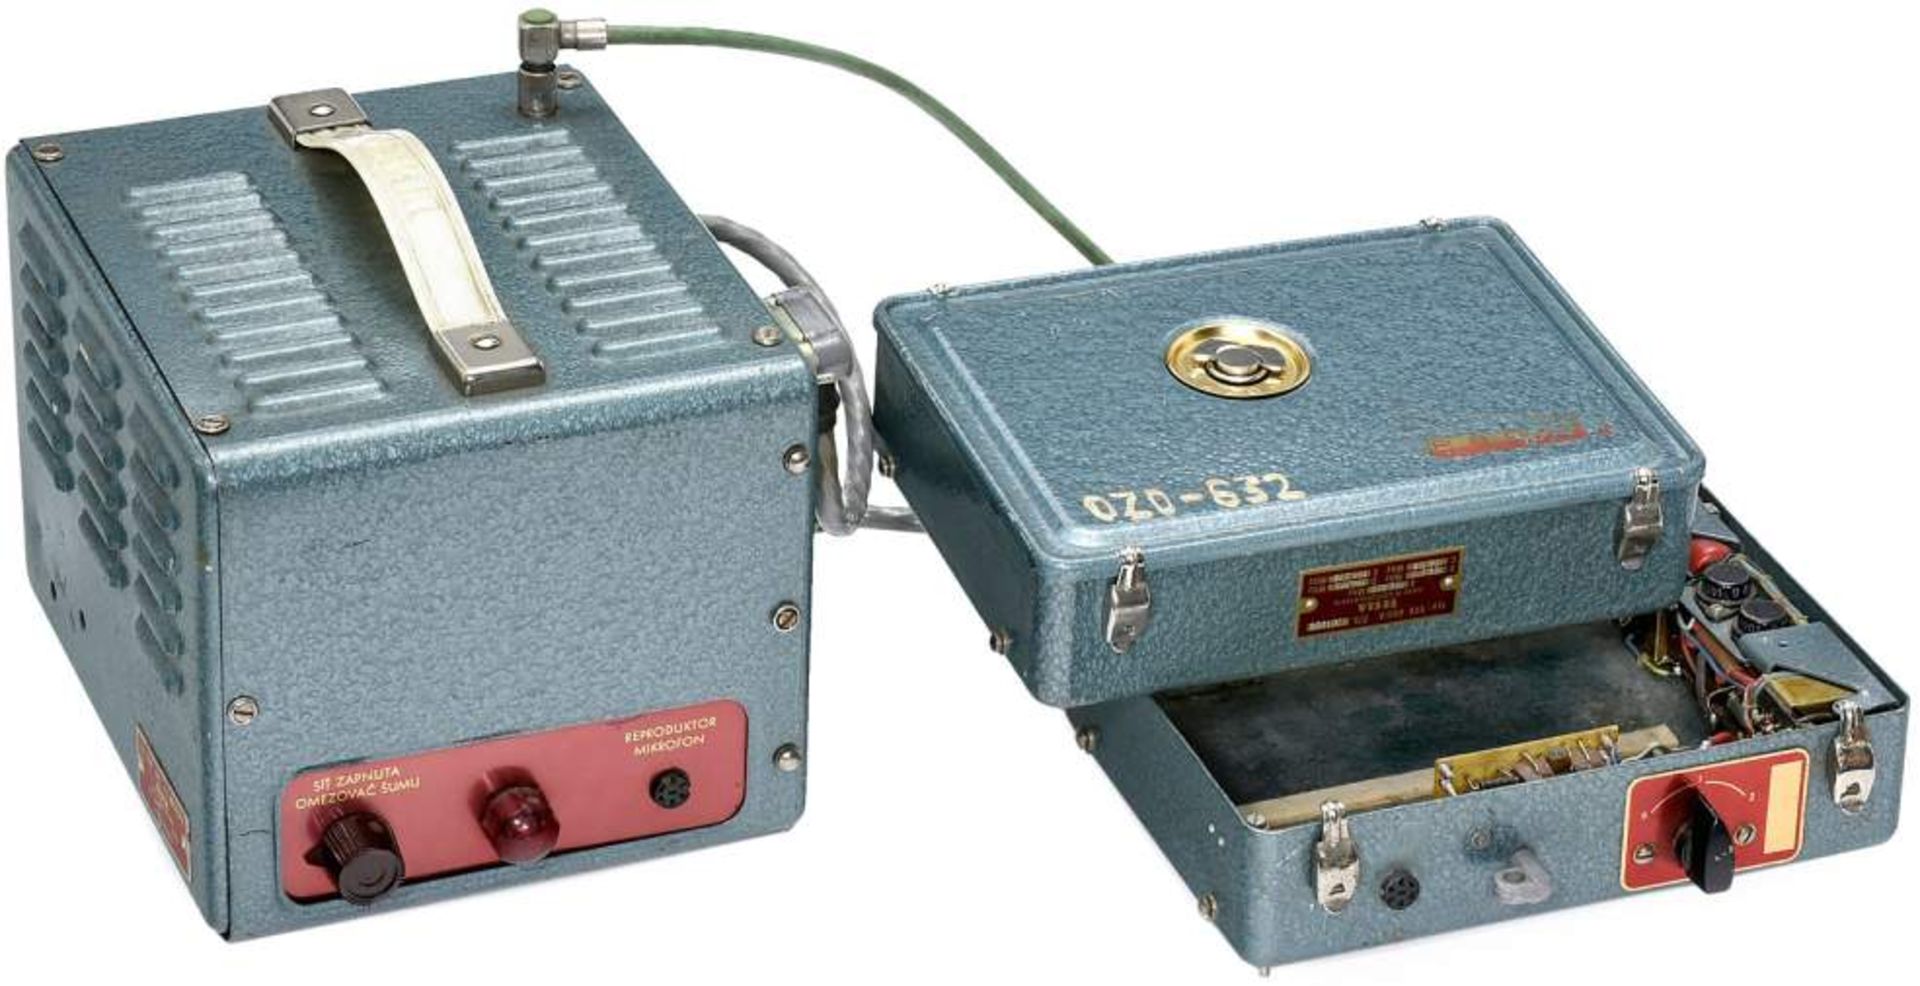 Czech Transceiver by Tesla, c. 1950
Communication transceiver Model VXV 050, with base station VXW